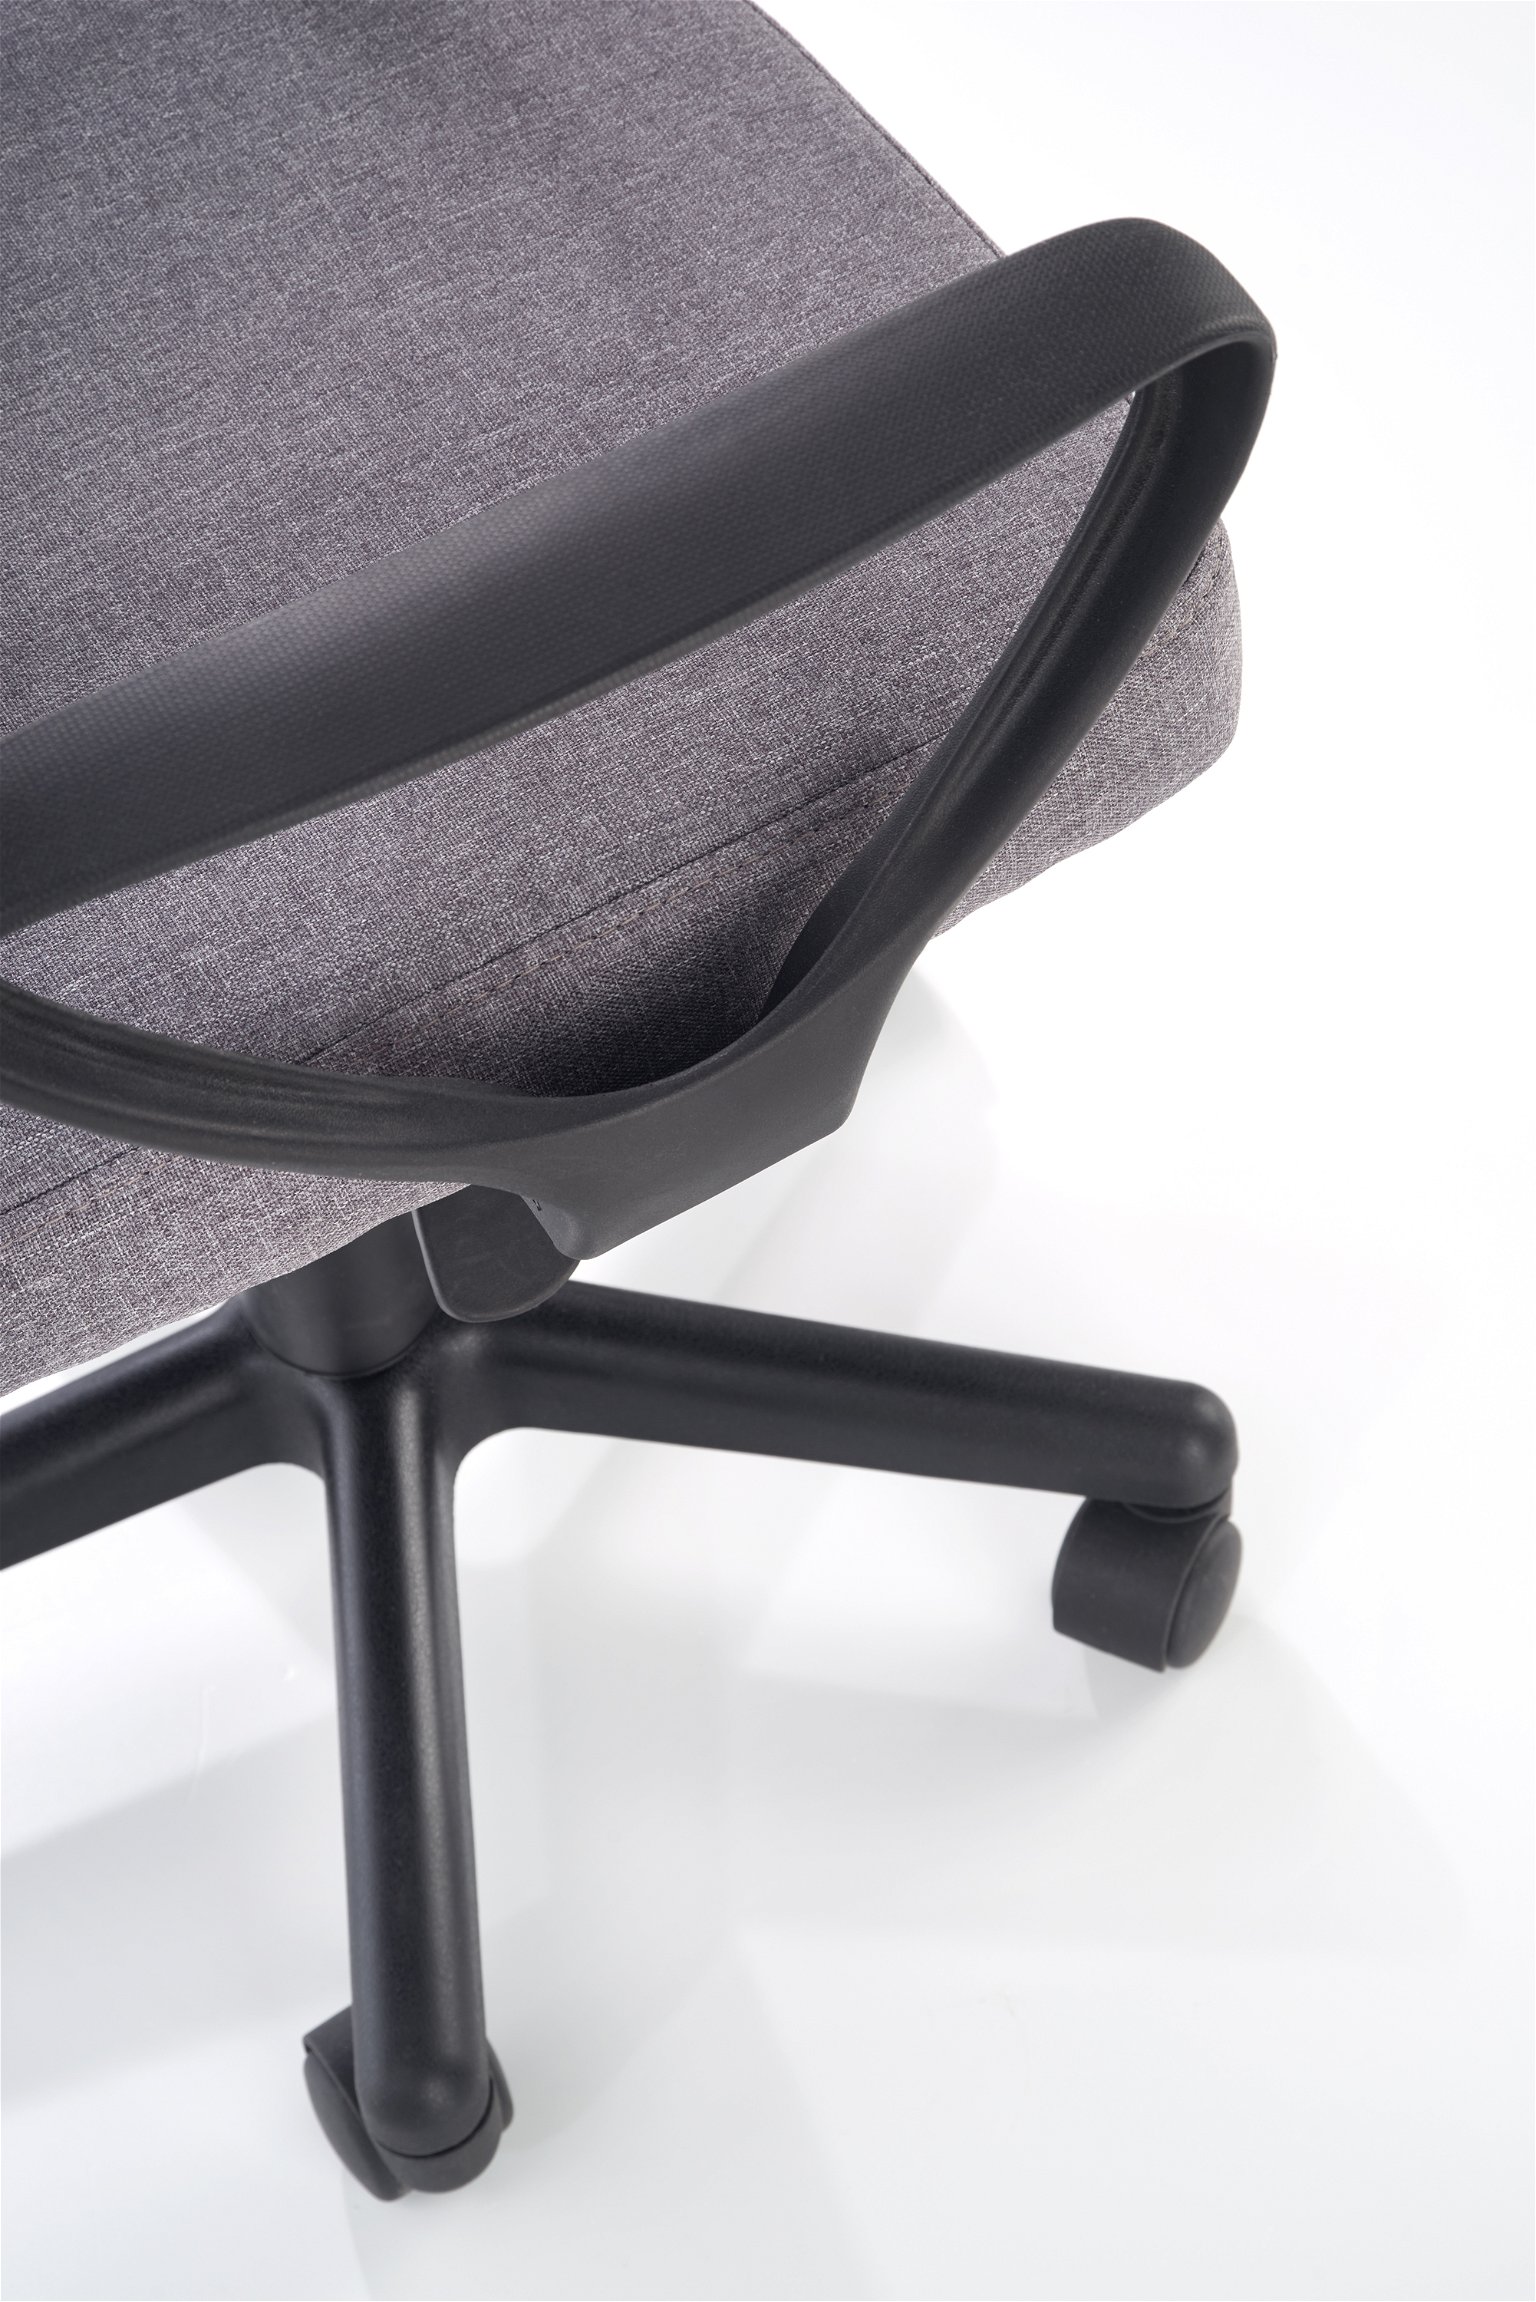 Biuro kėdė TIMMY, pilka/juoda - 4